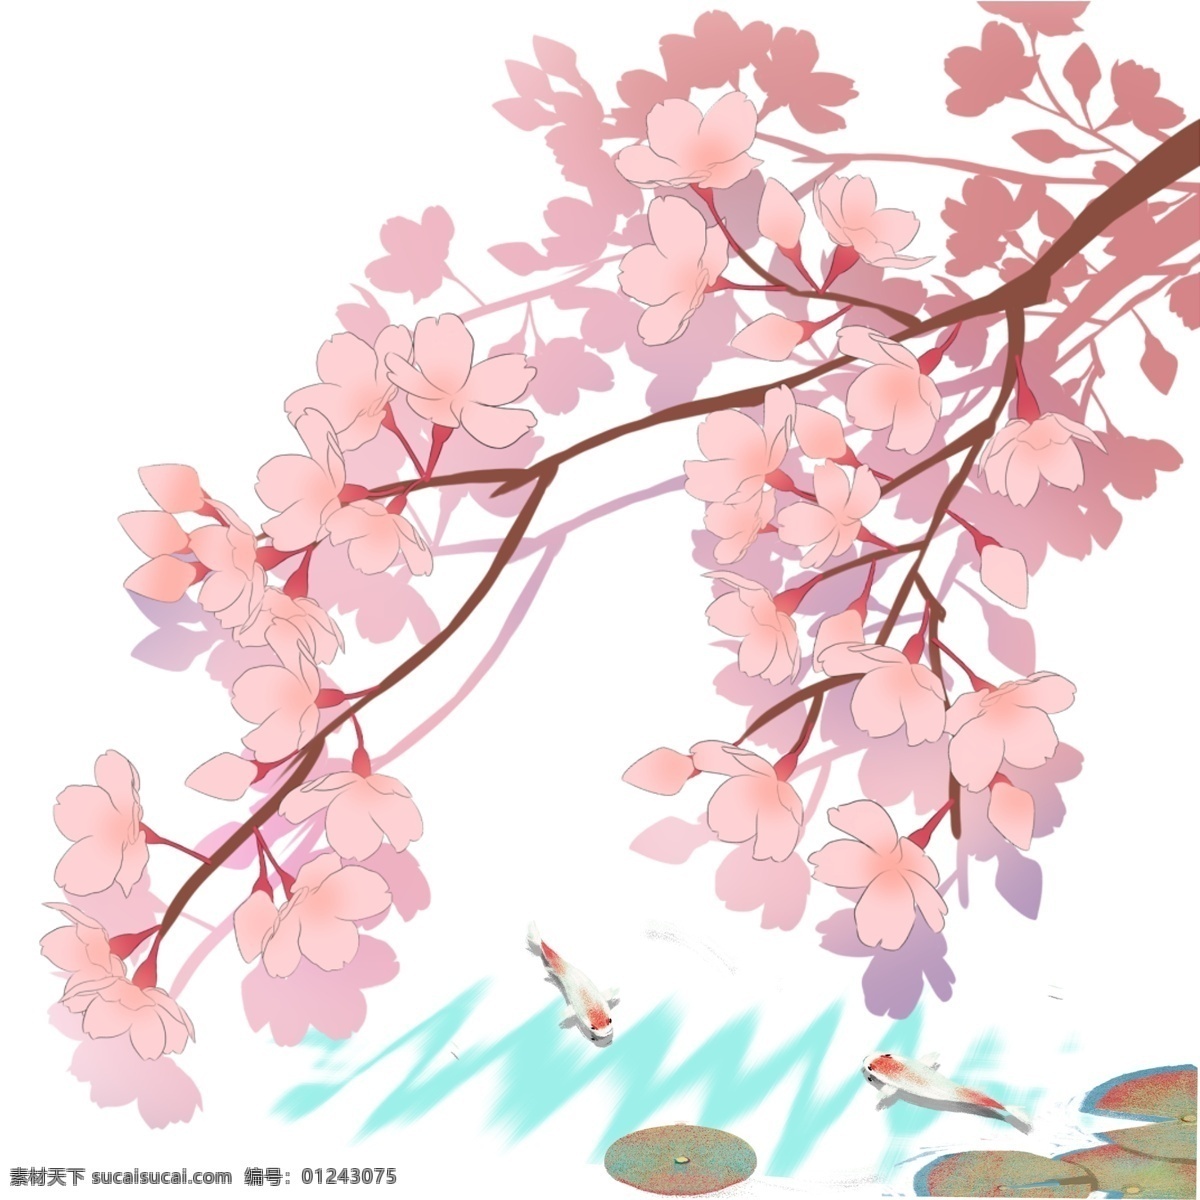 日本 春天 樱花 锦鲤 池塘 风景 春季 花卉 花朵 粉色花瓣 樱花树 树枝 观赏樱花 手绘樱花 水纹 波浪 池塘景致